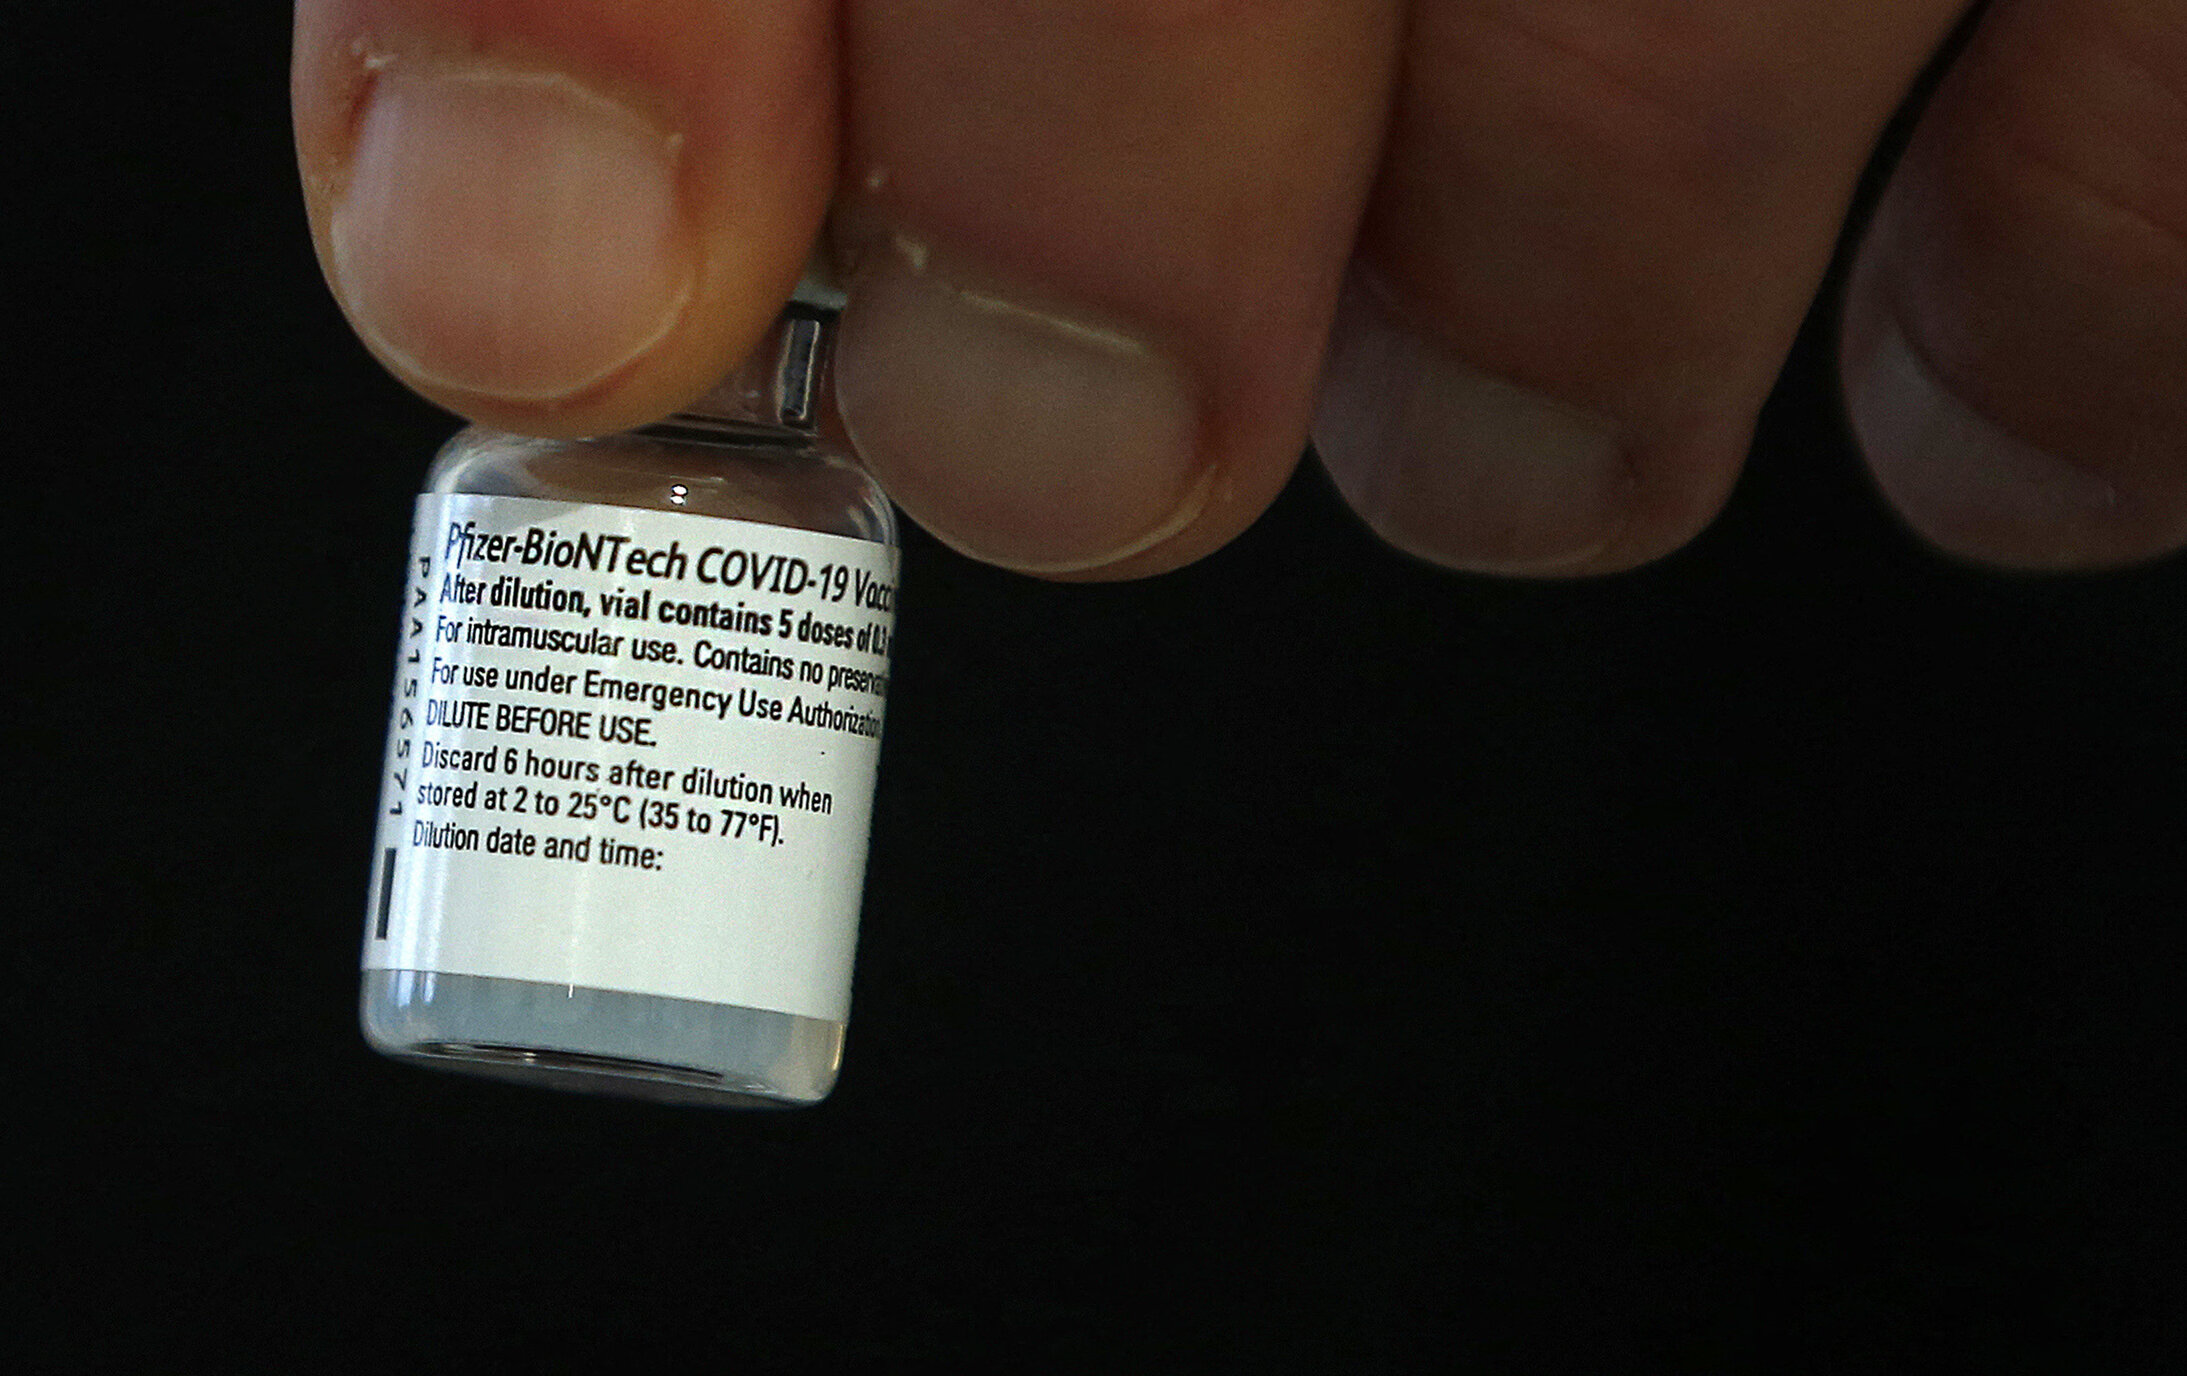 Elveția| O persoană a decedat după ce a fost vaccinată anti-Covid. NU se poate face o legătură clară cu vaccinul